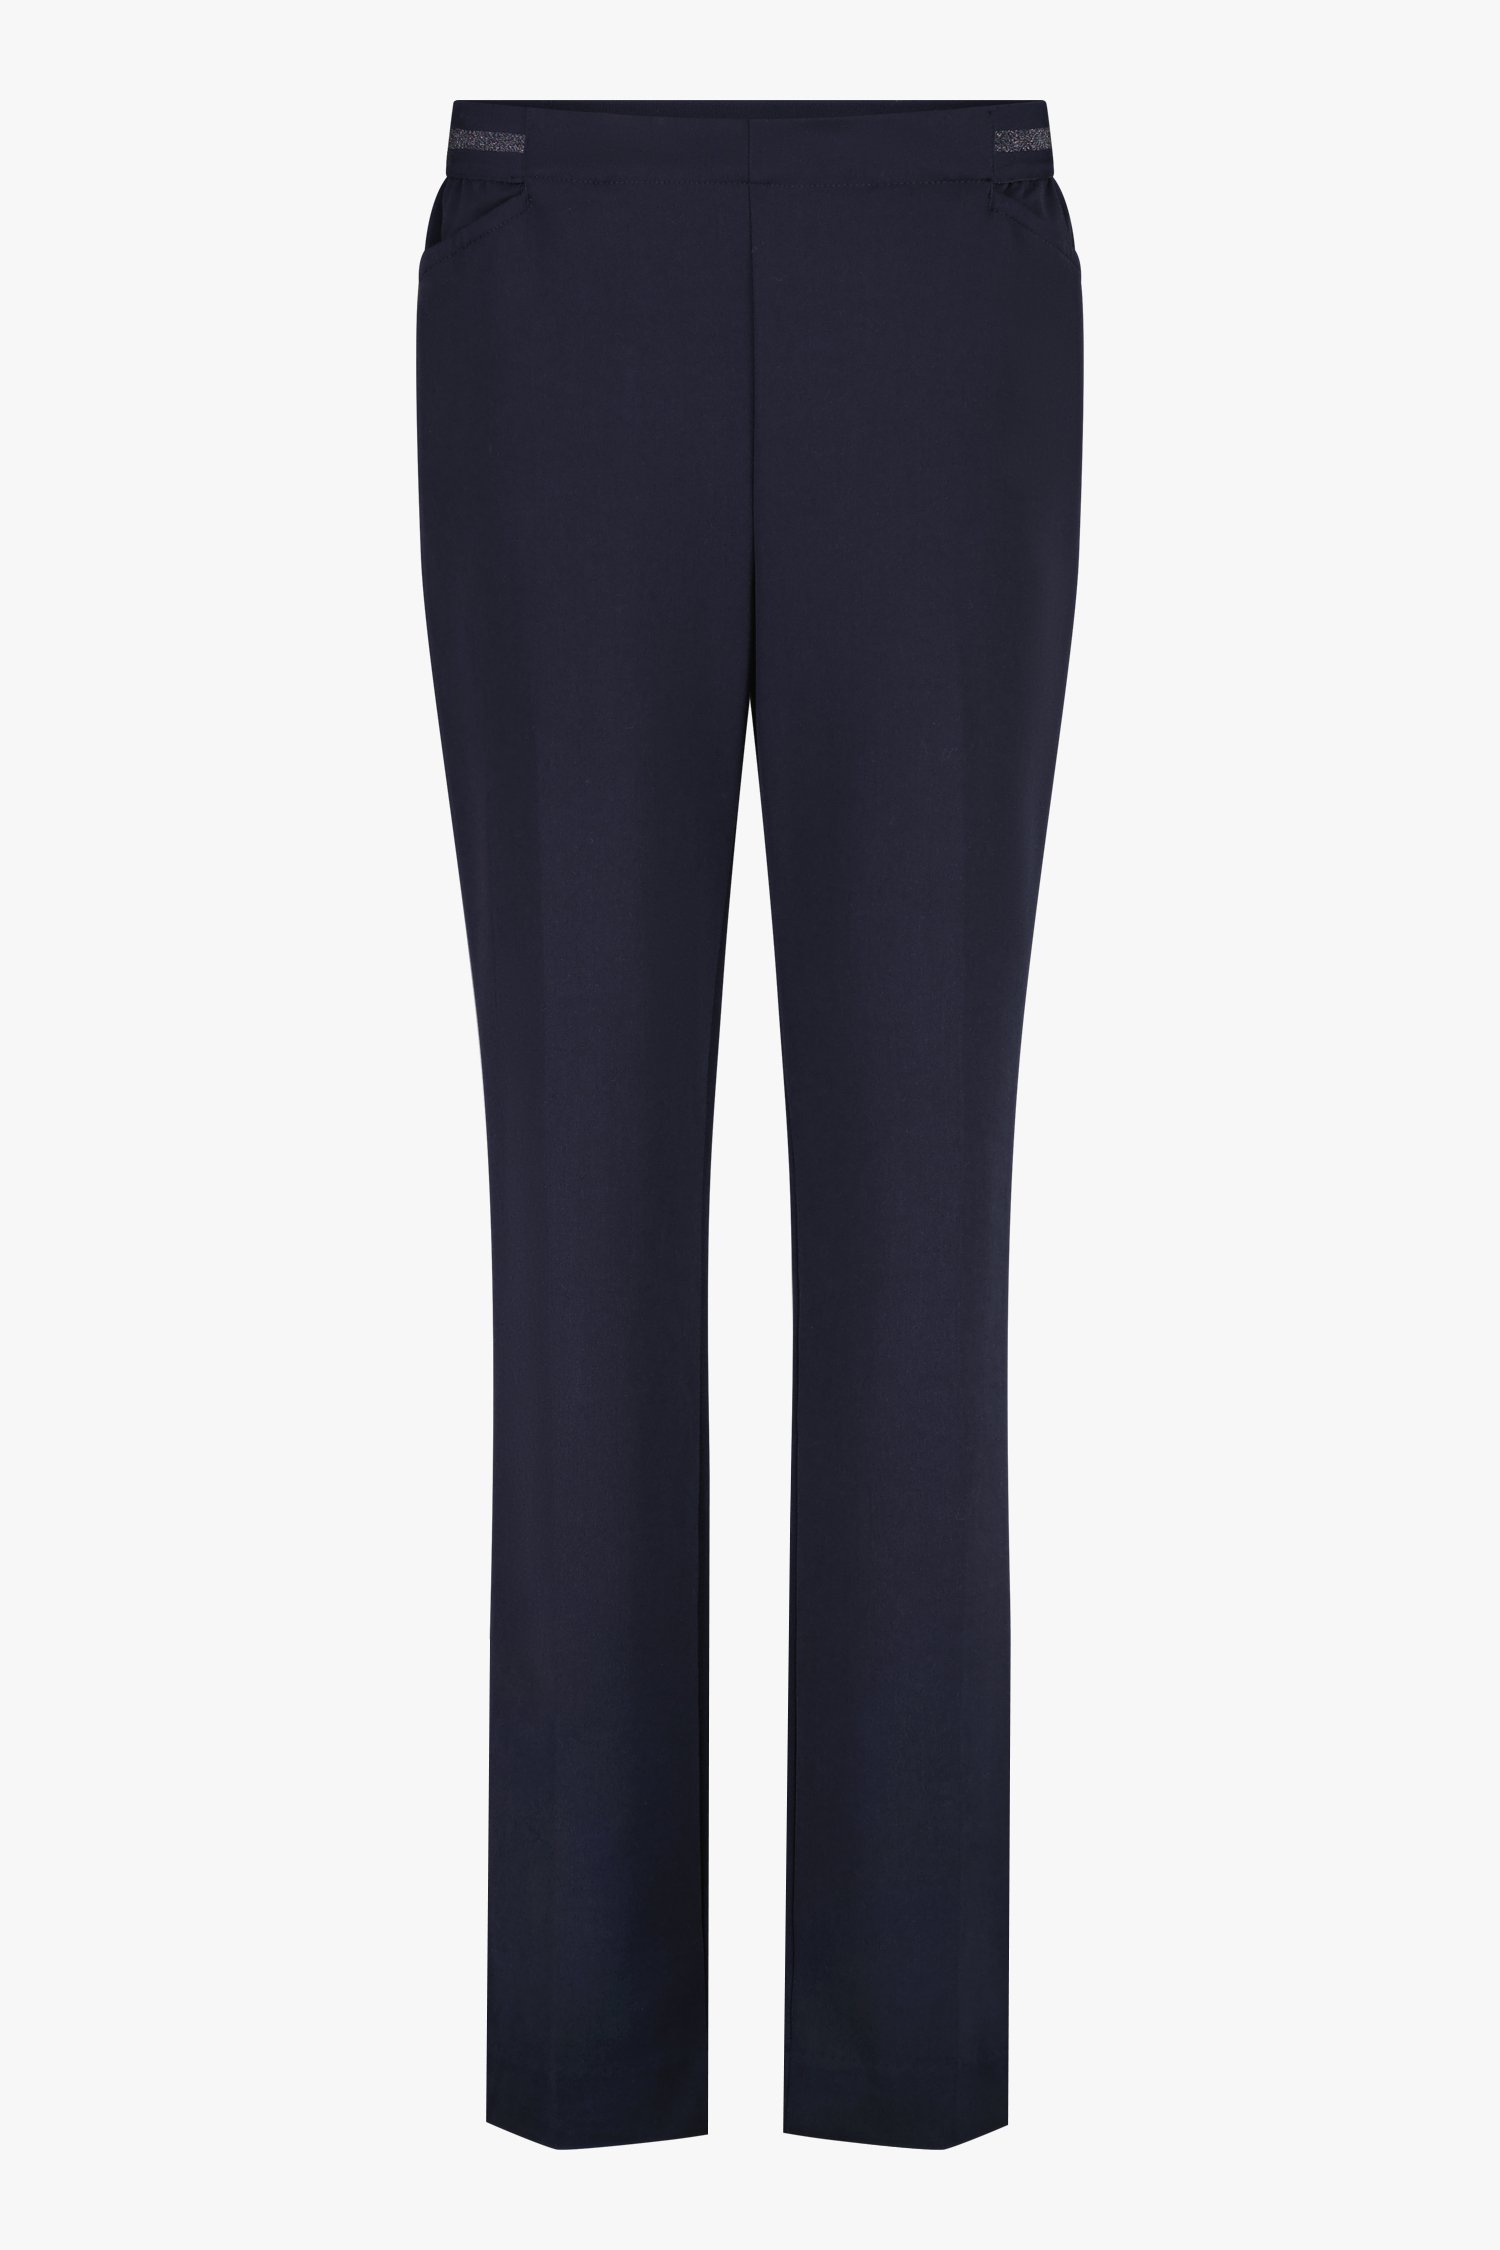 Pantalon bleu foncé avec taille élastiquée de Claude Arielle pour Femmes